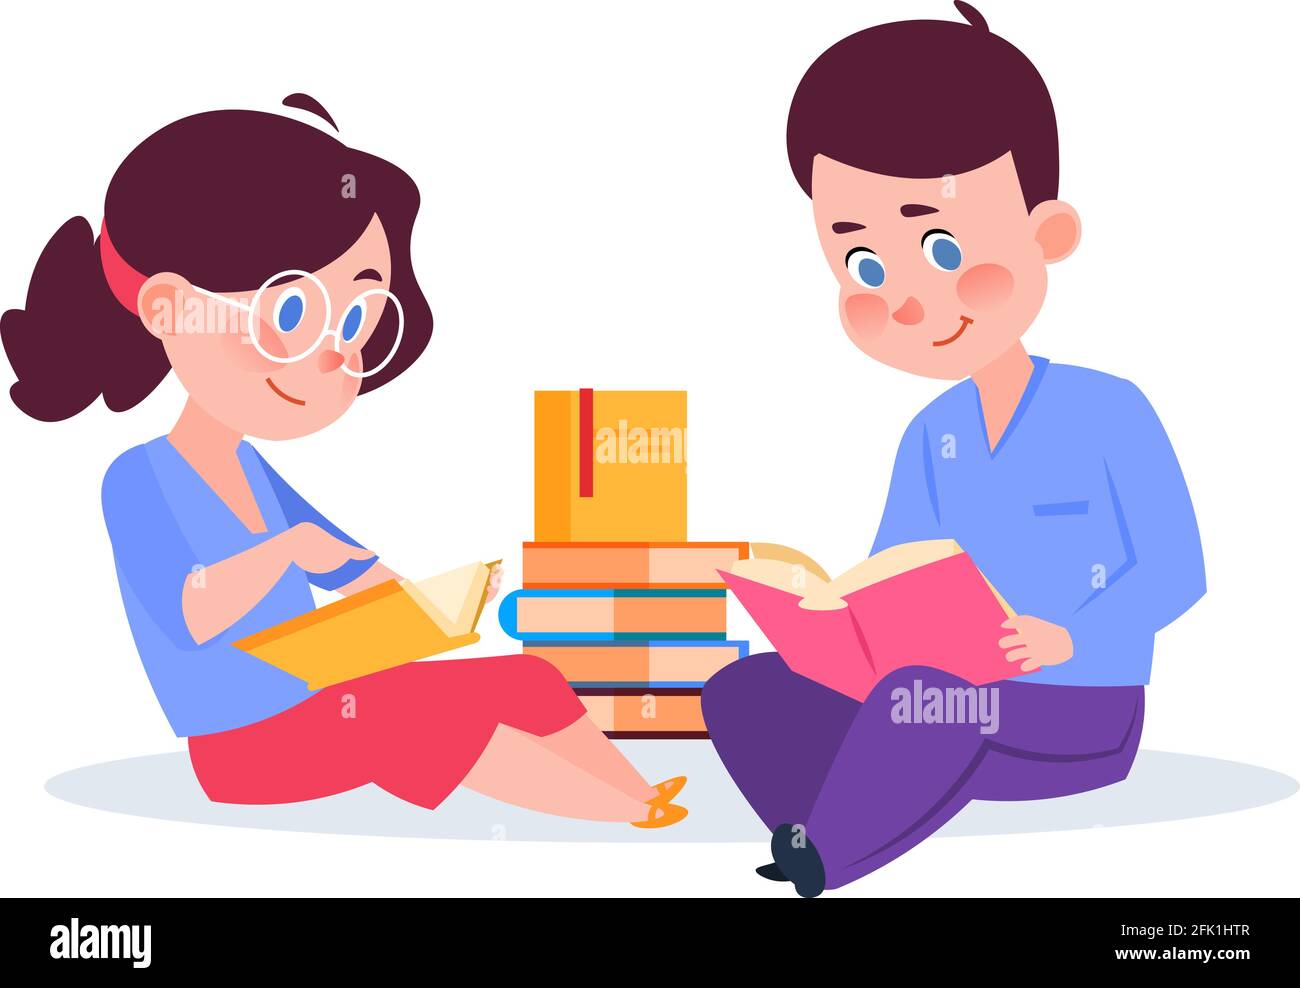 Kinder lesen Bücher. Cartoon junge Mädchen mit Buch, Kinder in der Bibliothek oder Unterricht. Selbstbildung, Bruder und Schwester lernen neue Vektor-Illustration Stock Vektor